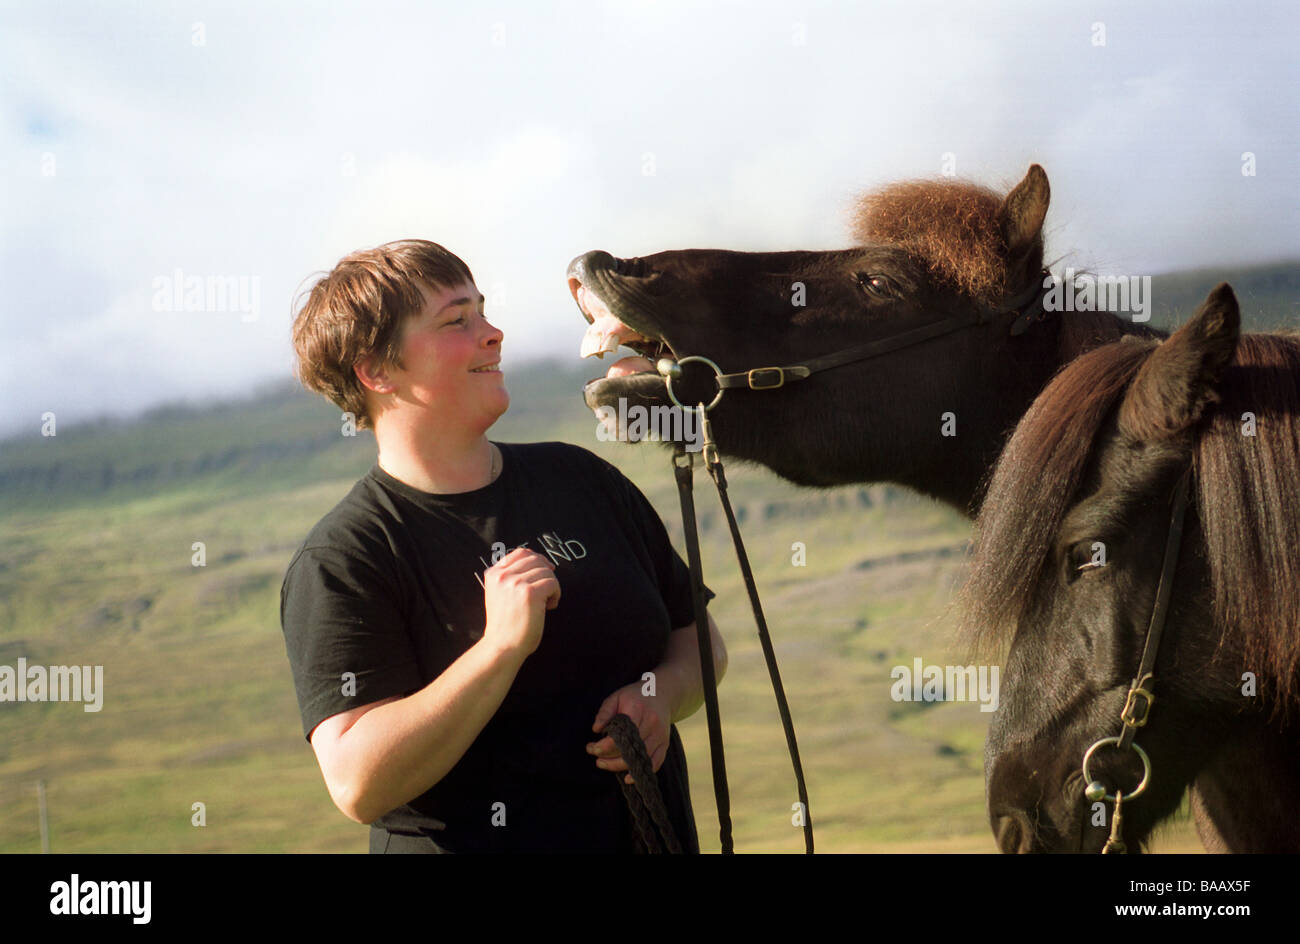 Evelyn Kuhne with Icelandic horses, Varmahlid, Iceland Stock Photo